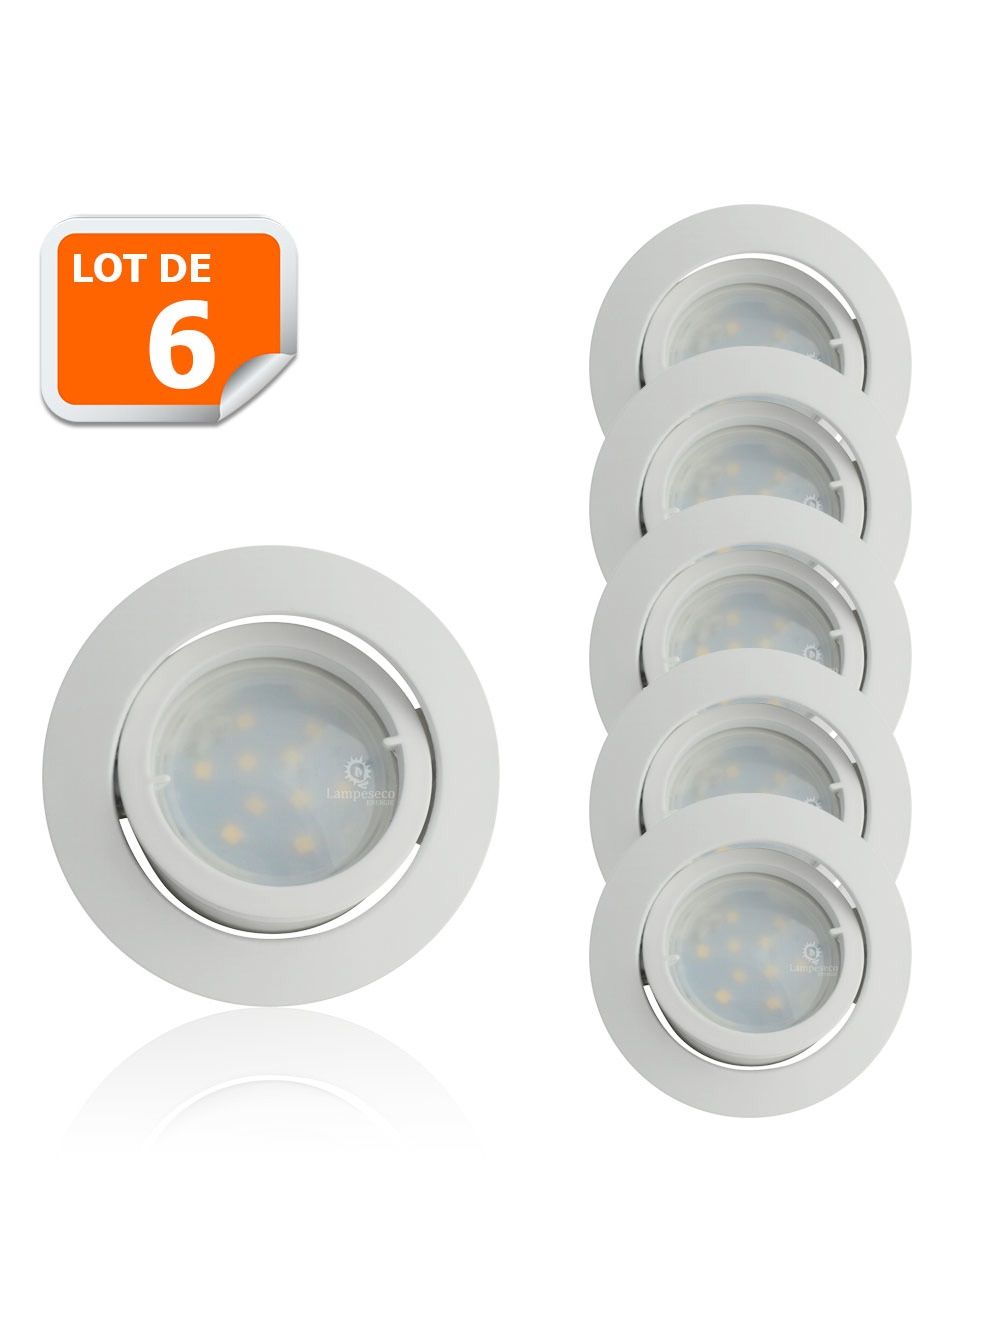 Spot LED encastrable, double fixation, lumière blanc neutre, consommation  de 6W, intensité lumineuse de 400 lumens, forme carré